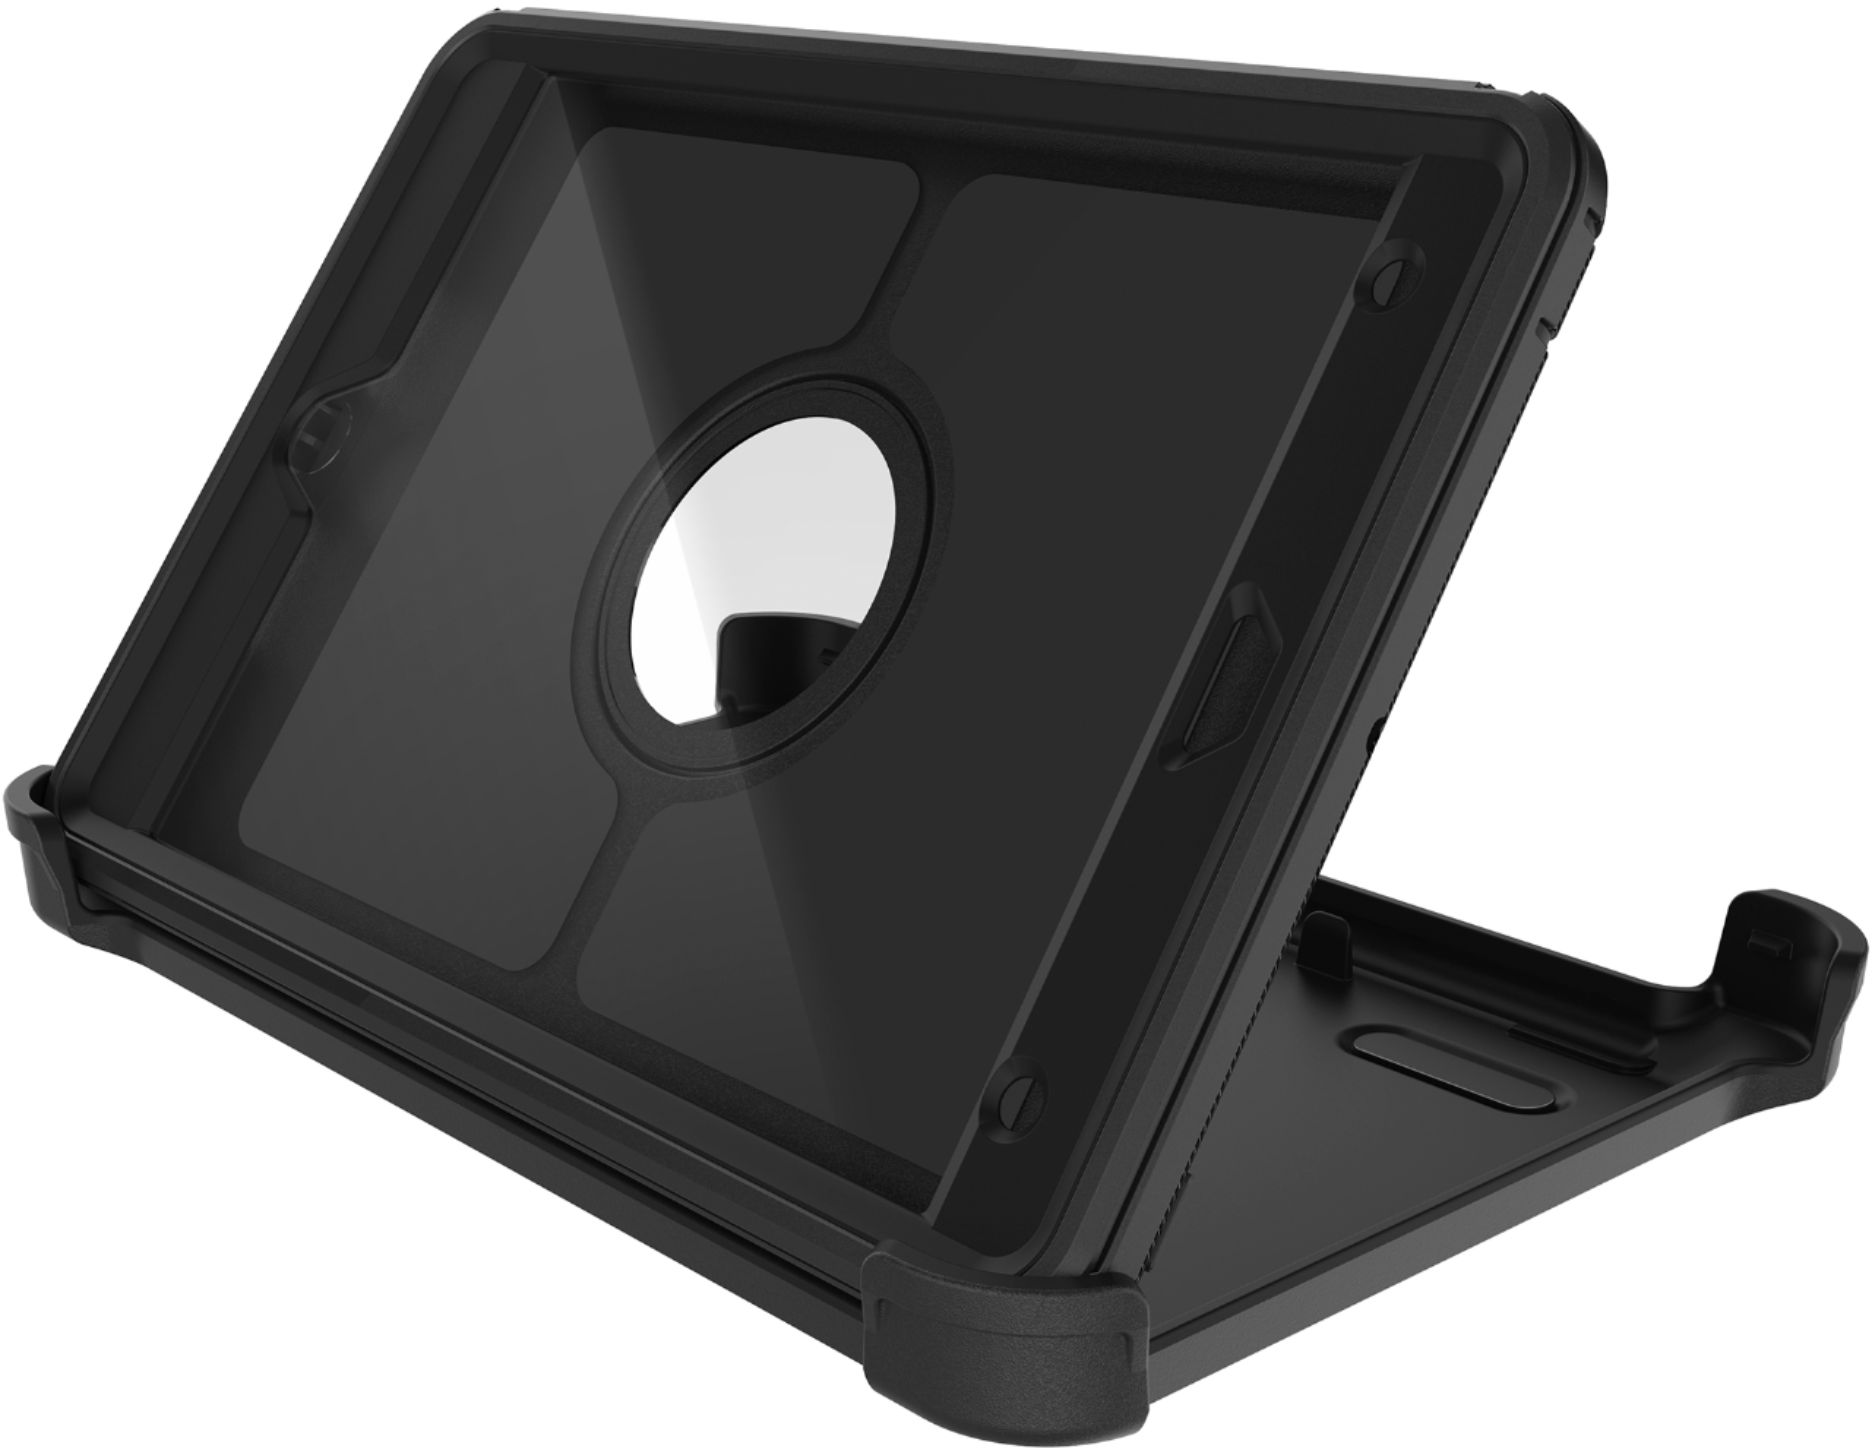 Genuino Funda De Protección Resistente Otterbox Defender Apple iPad Mini 5th Generación Negro